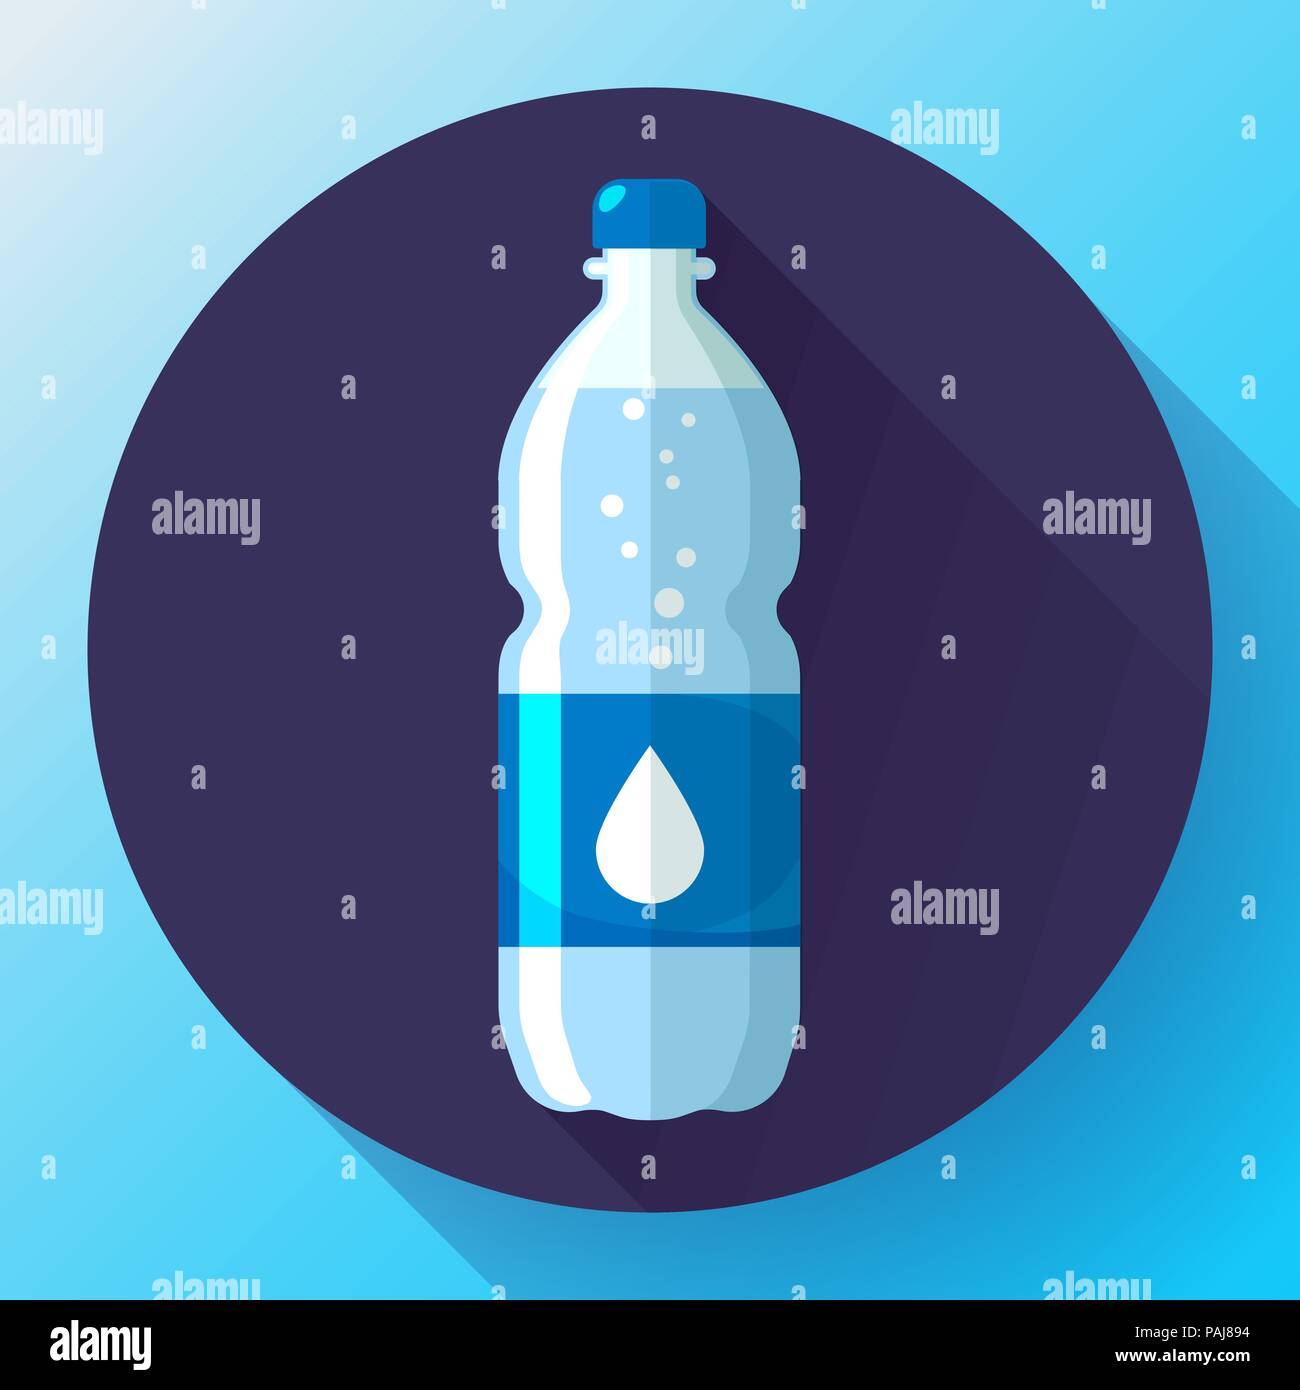 Botella De Agua Vectores, Iconos, Gráficos y Fondos para Descargar Gratis